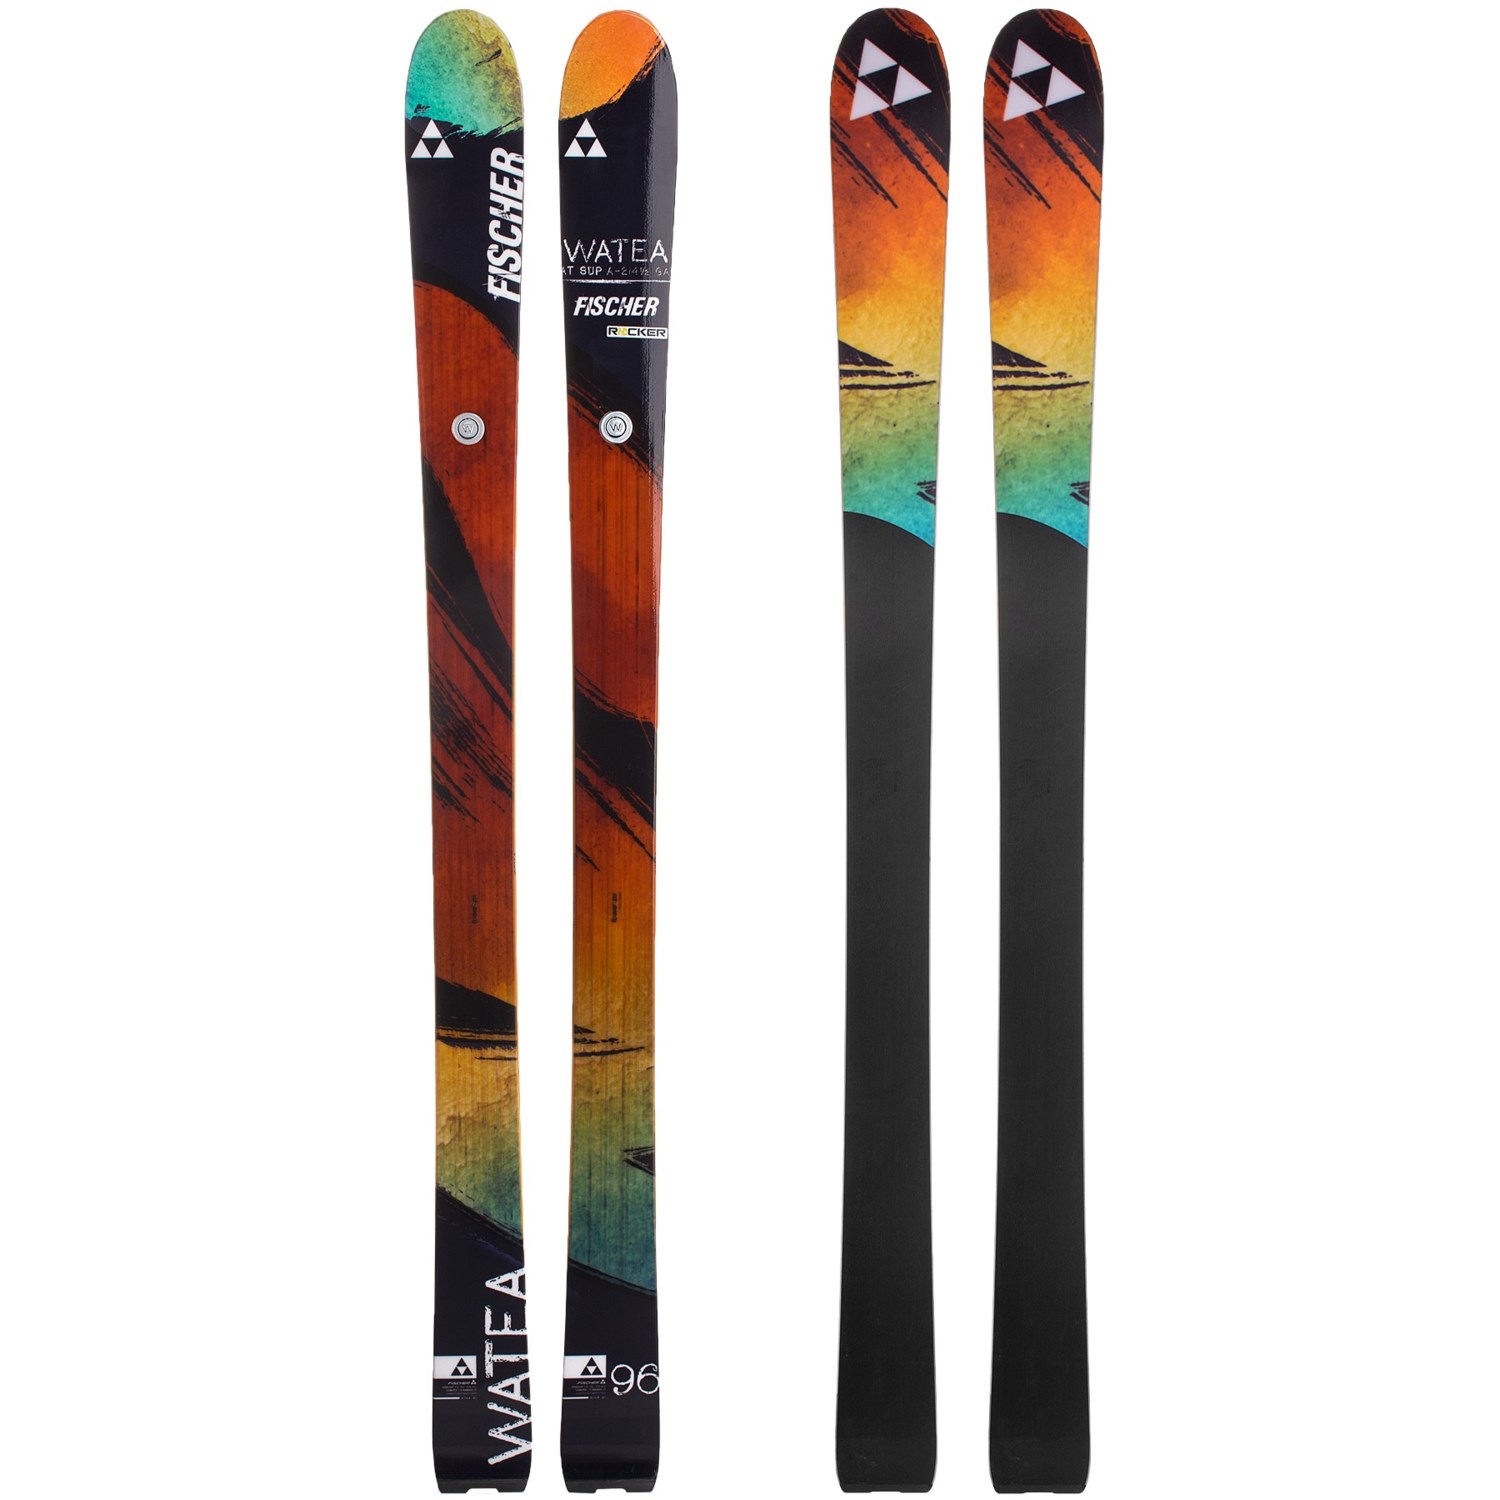 fischer-watea-96-alpine-skis-for-men-in-see-photo~p~7274k_99~1500.2.jpg